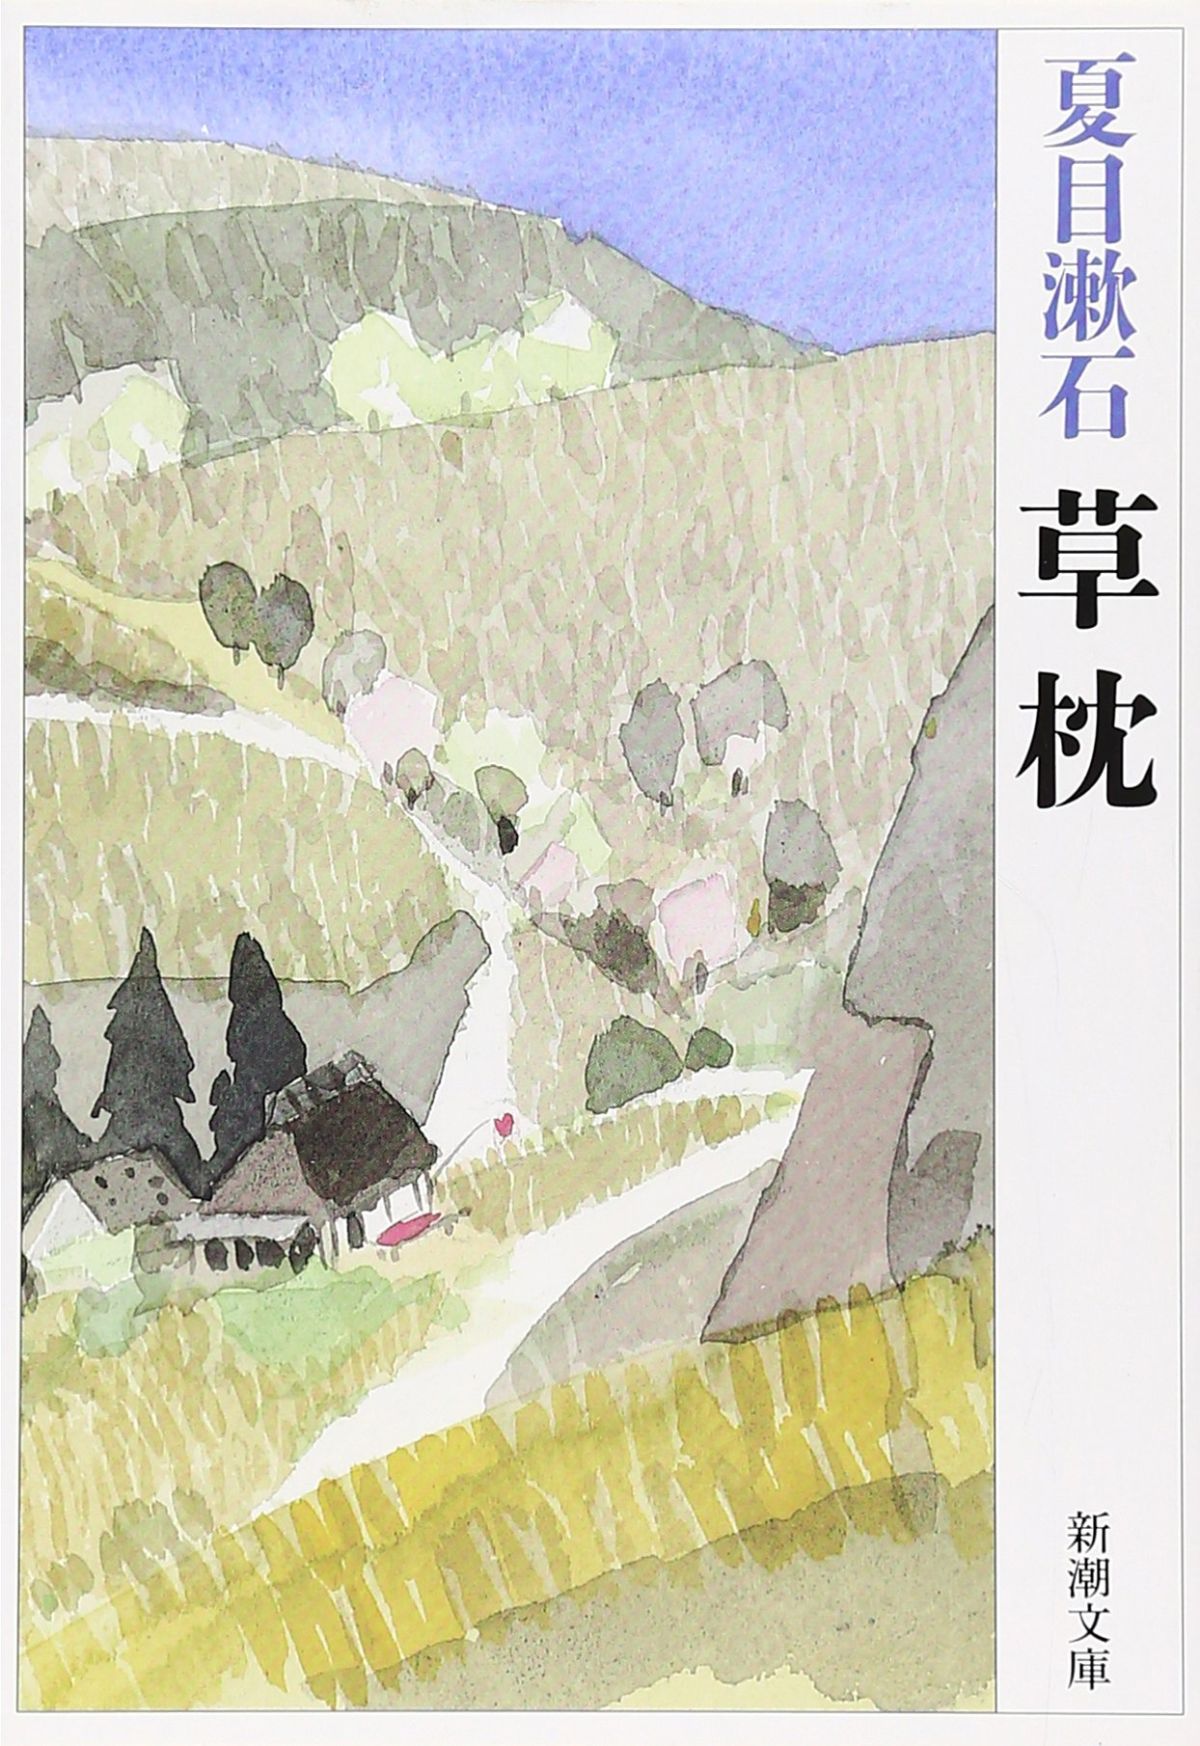 日本人なら読んでおかなきゃヤバい 夏目漱石おすすめ作品まとめ ダ ヴィンチニュース